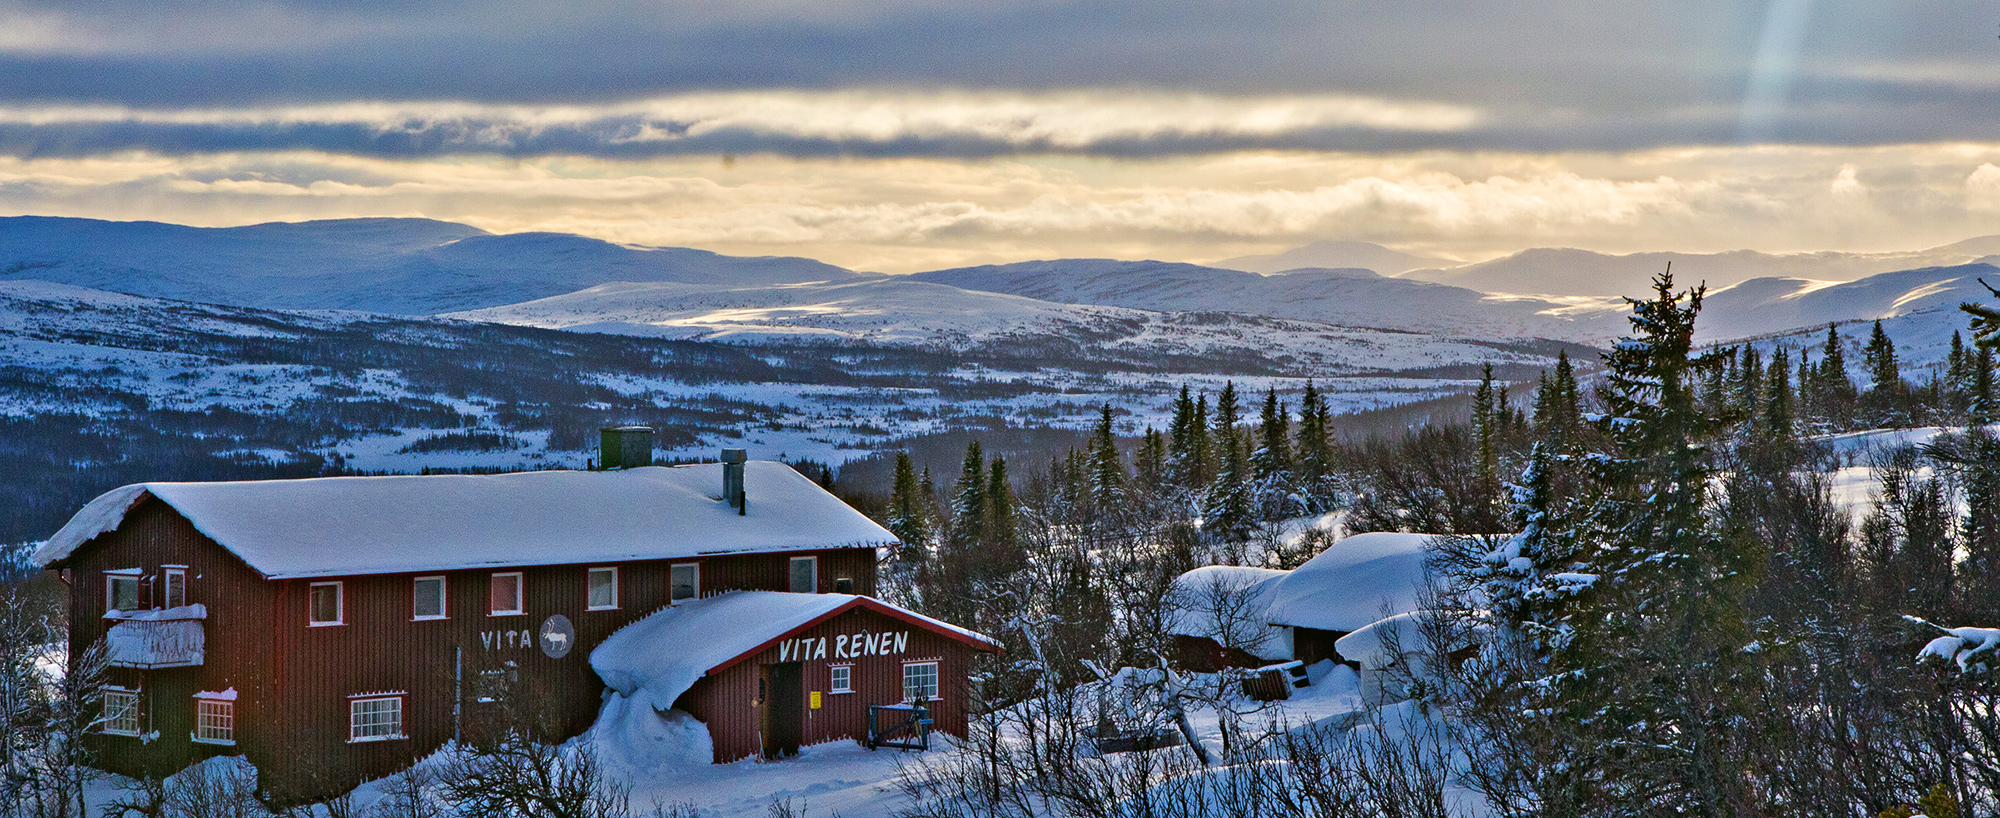 Att ta sig upp till Vita Renen, på Renfjället, är en av fjällupplevelserna i världsklass i Södra Årefjällen.